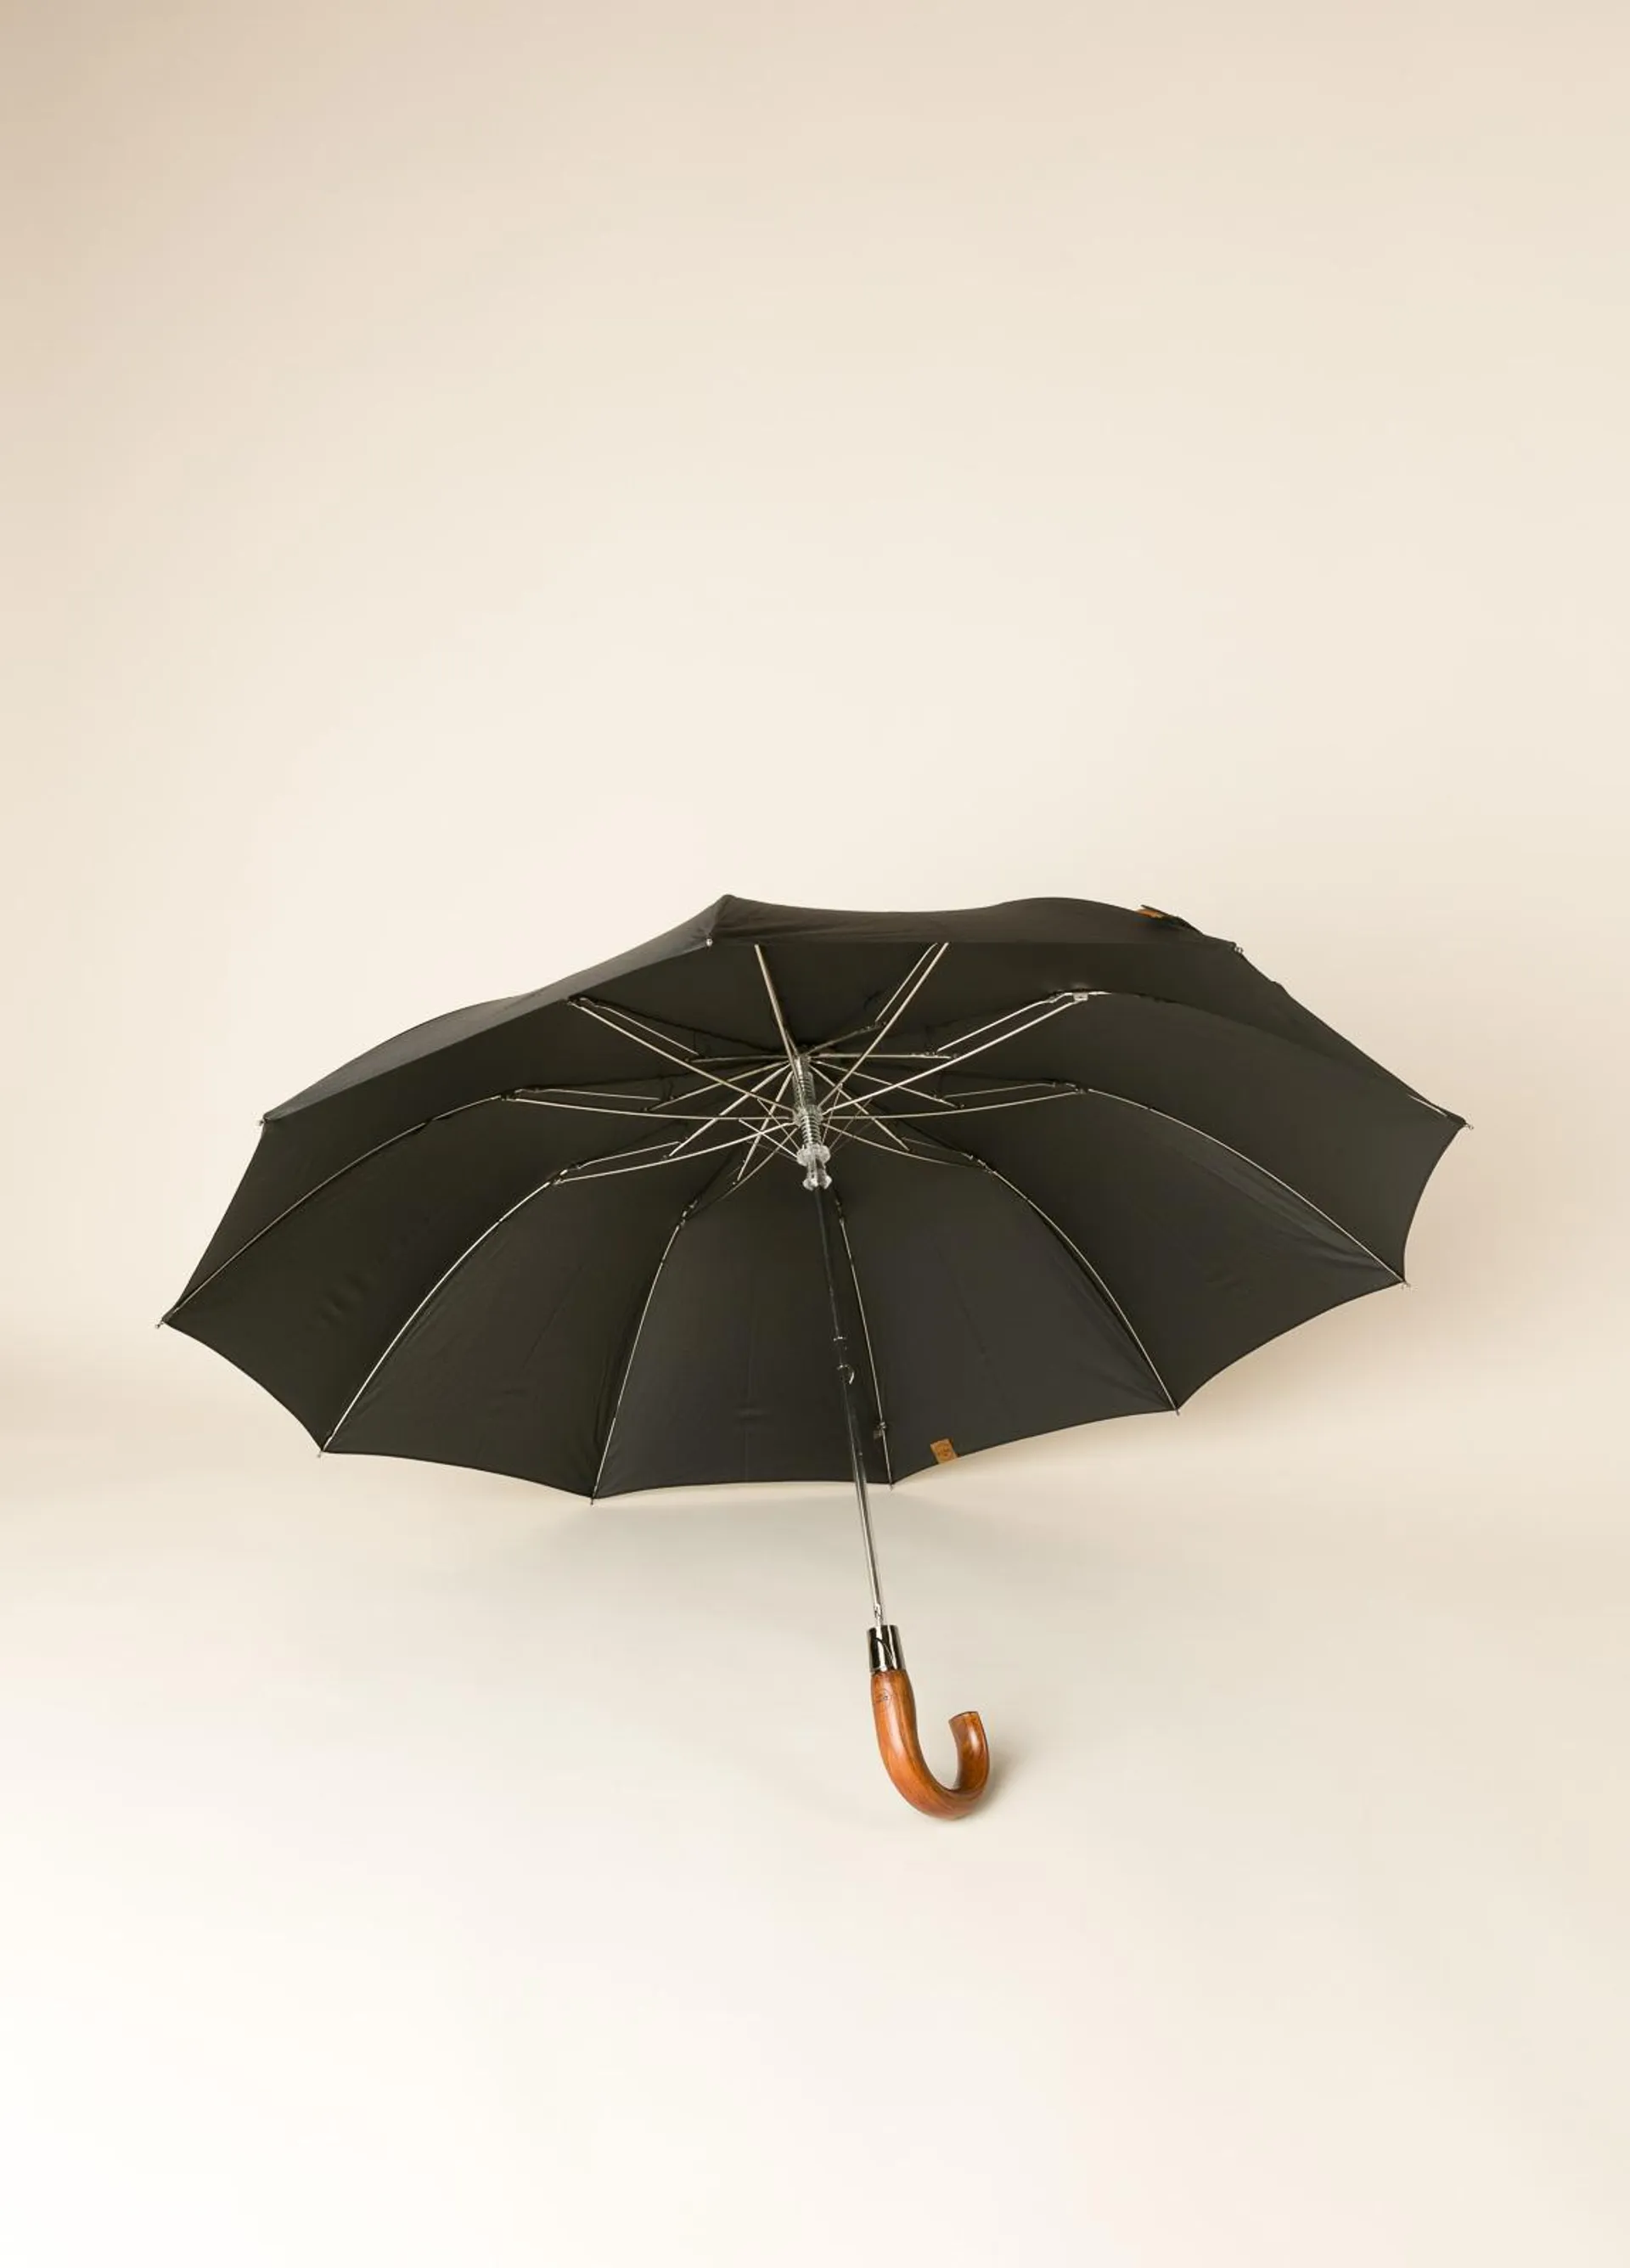 Paraguas FUREST COLECCIÓN plegable negro con puño de madera.